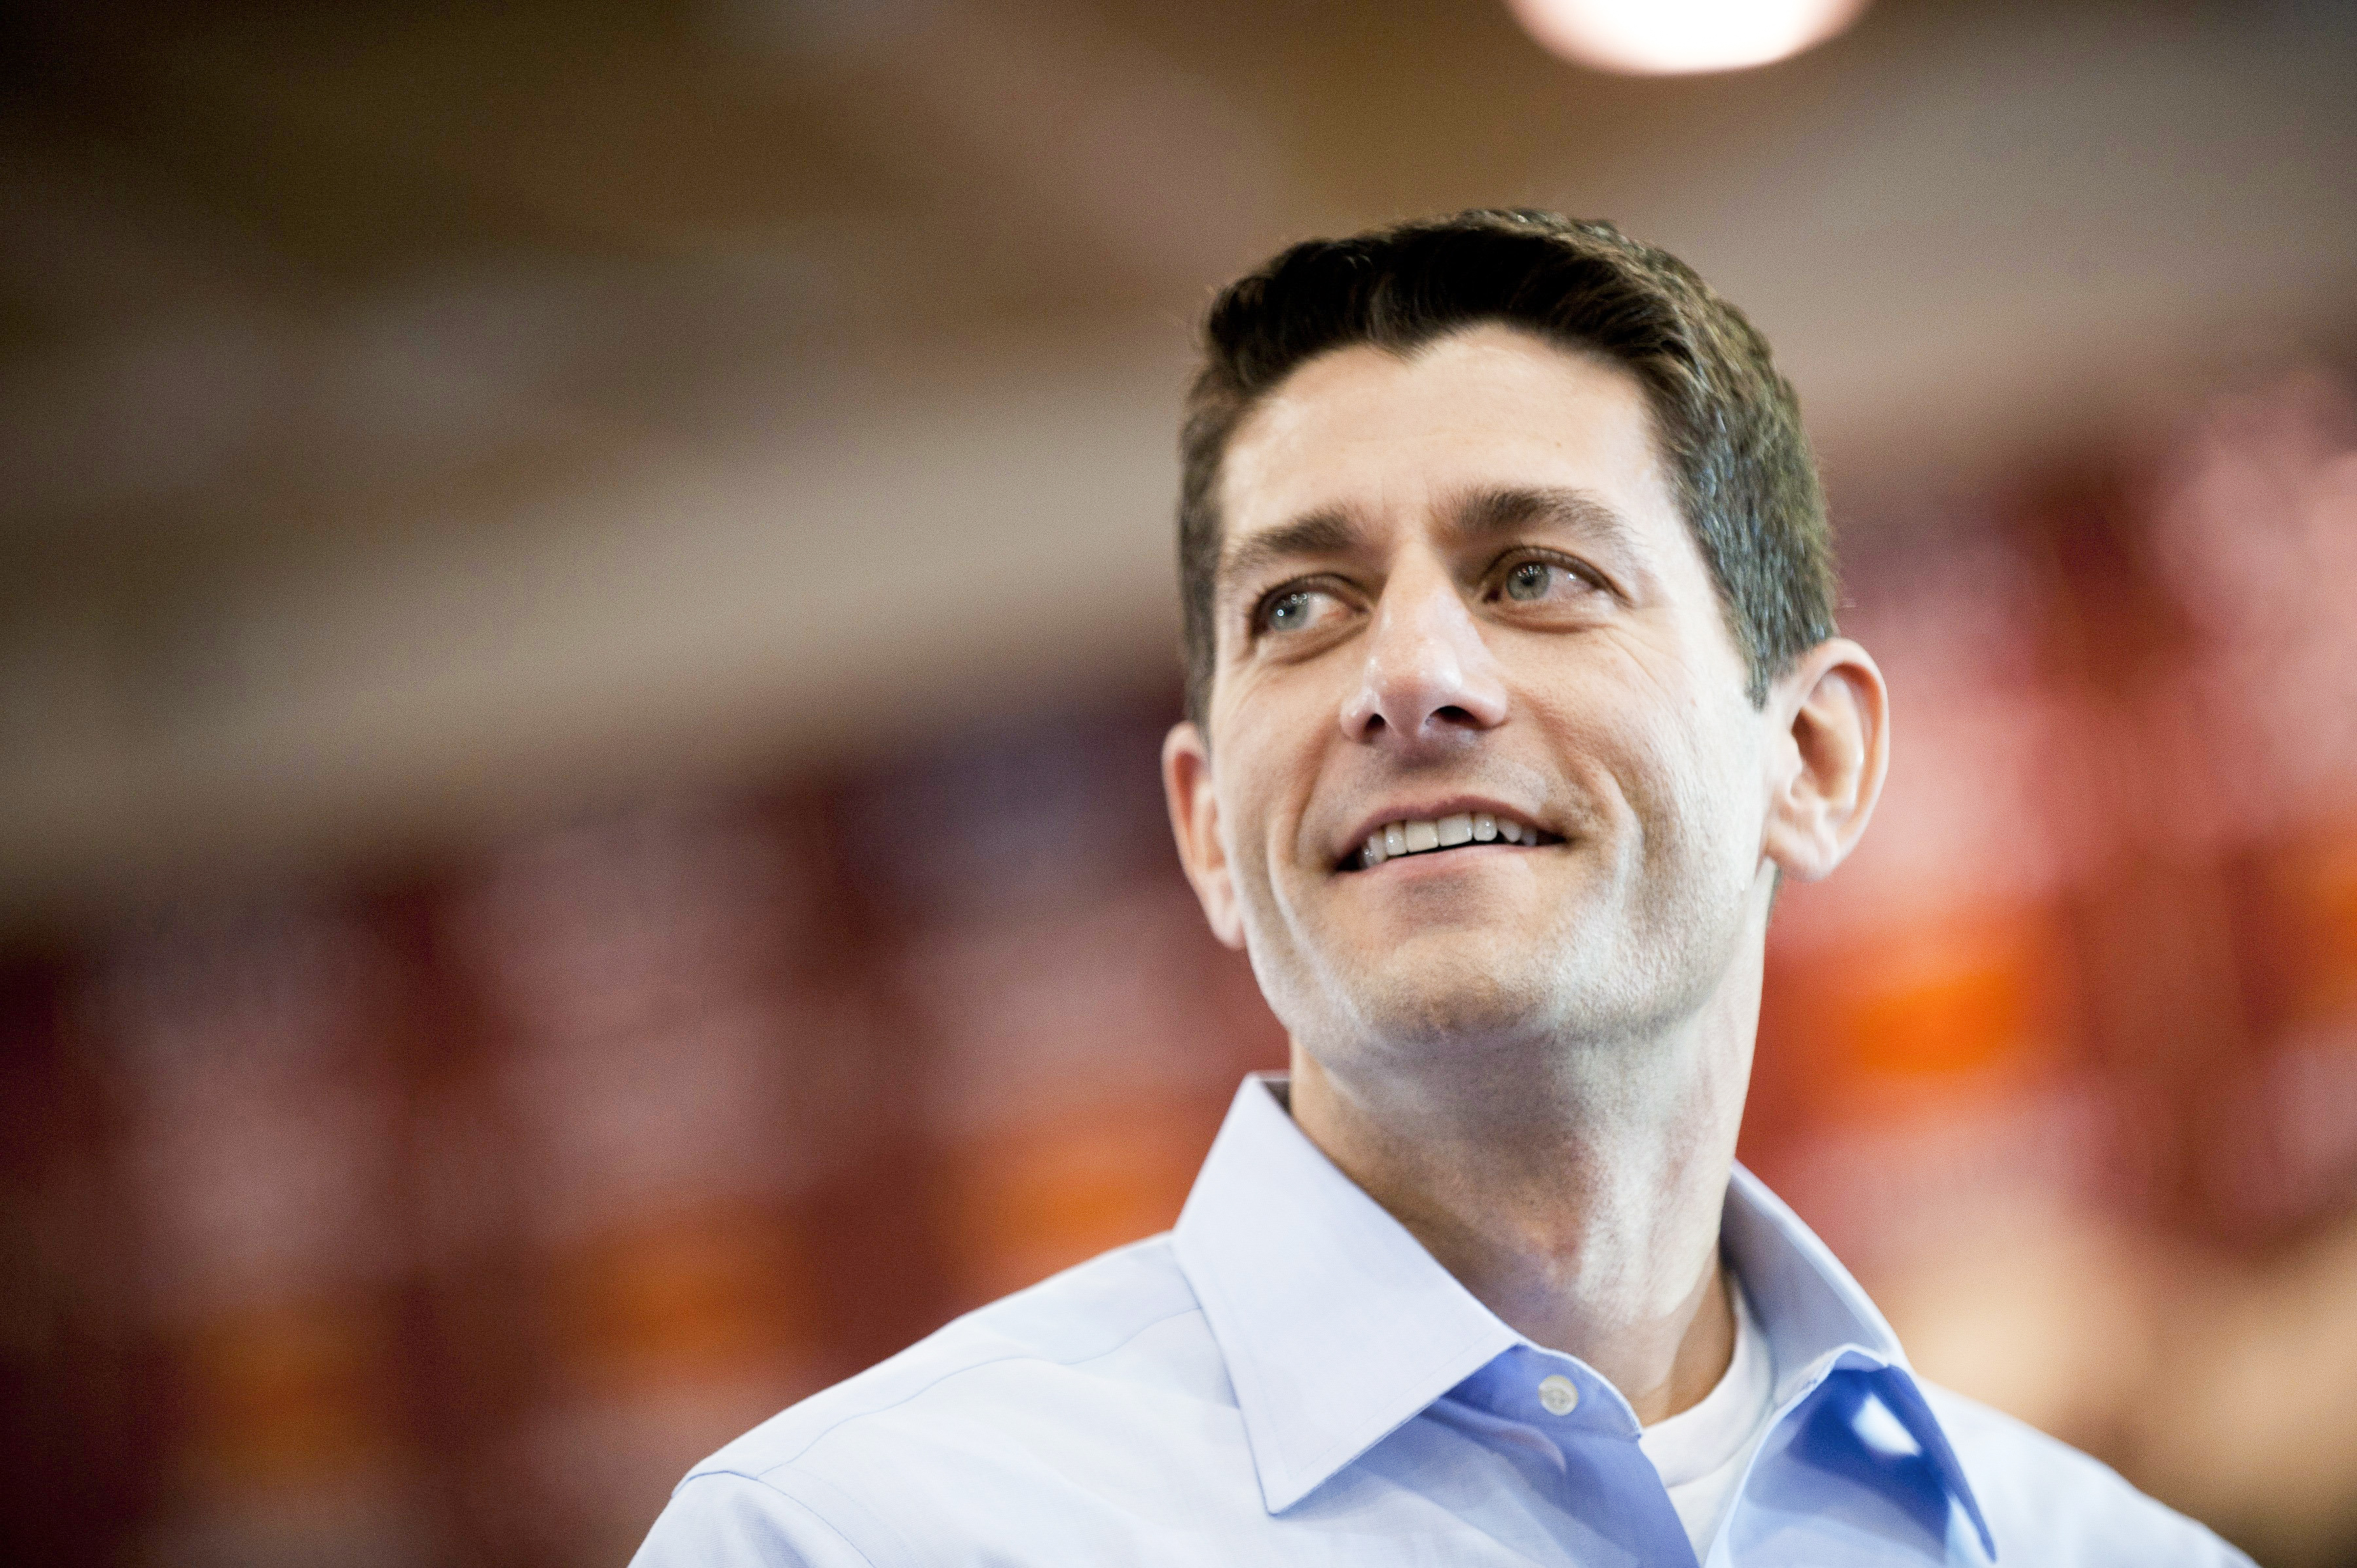 Paul Ryan considers running for speaker 